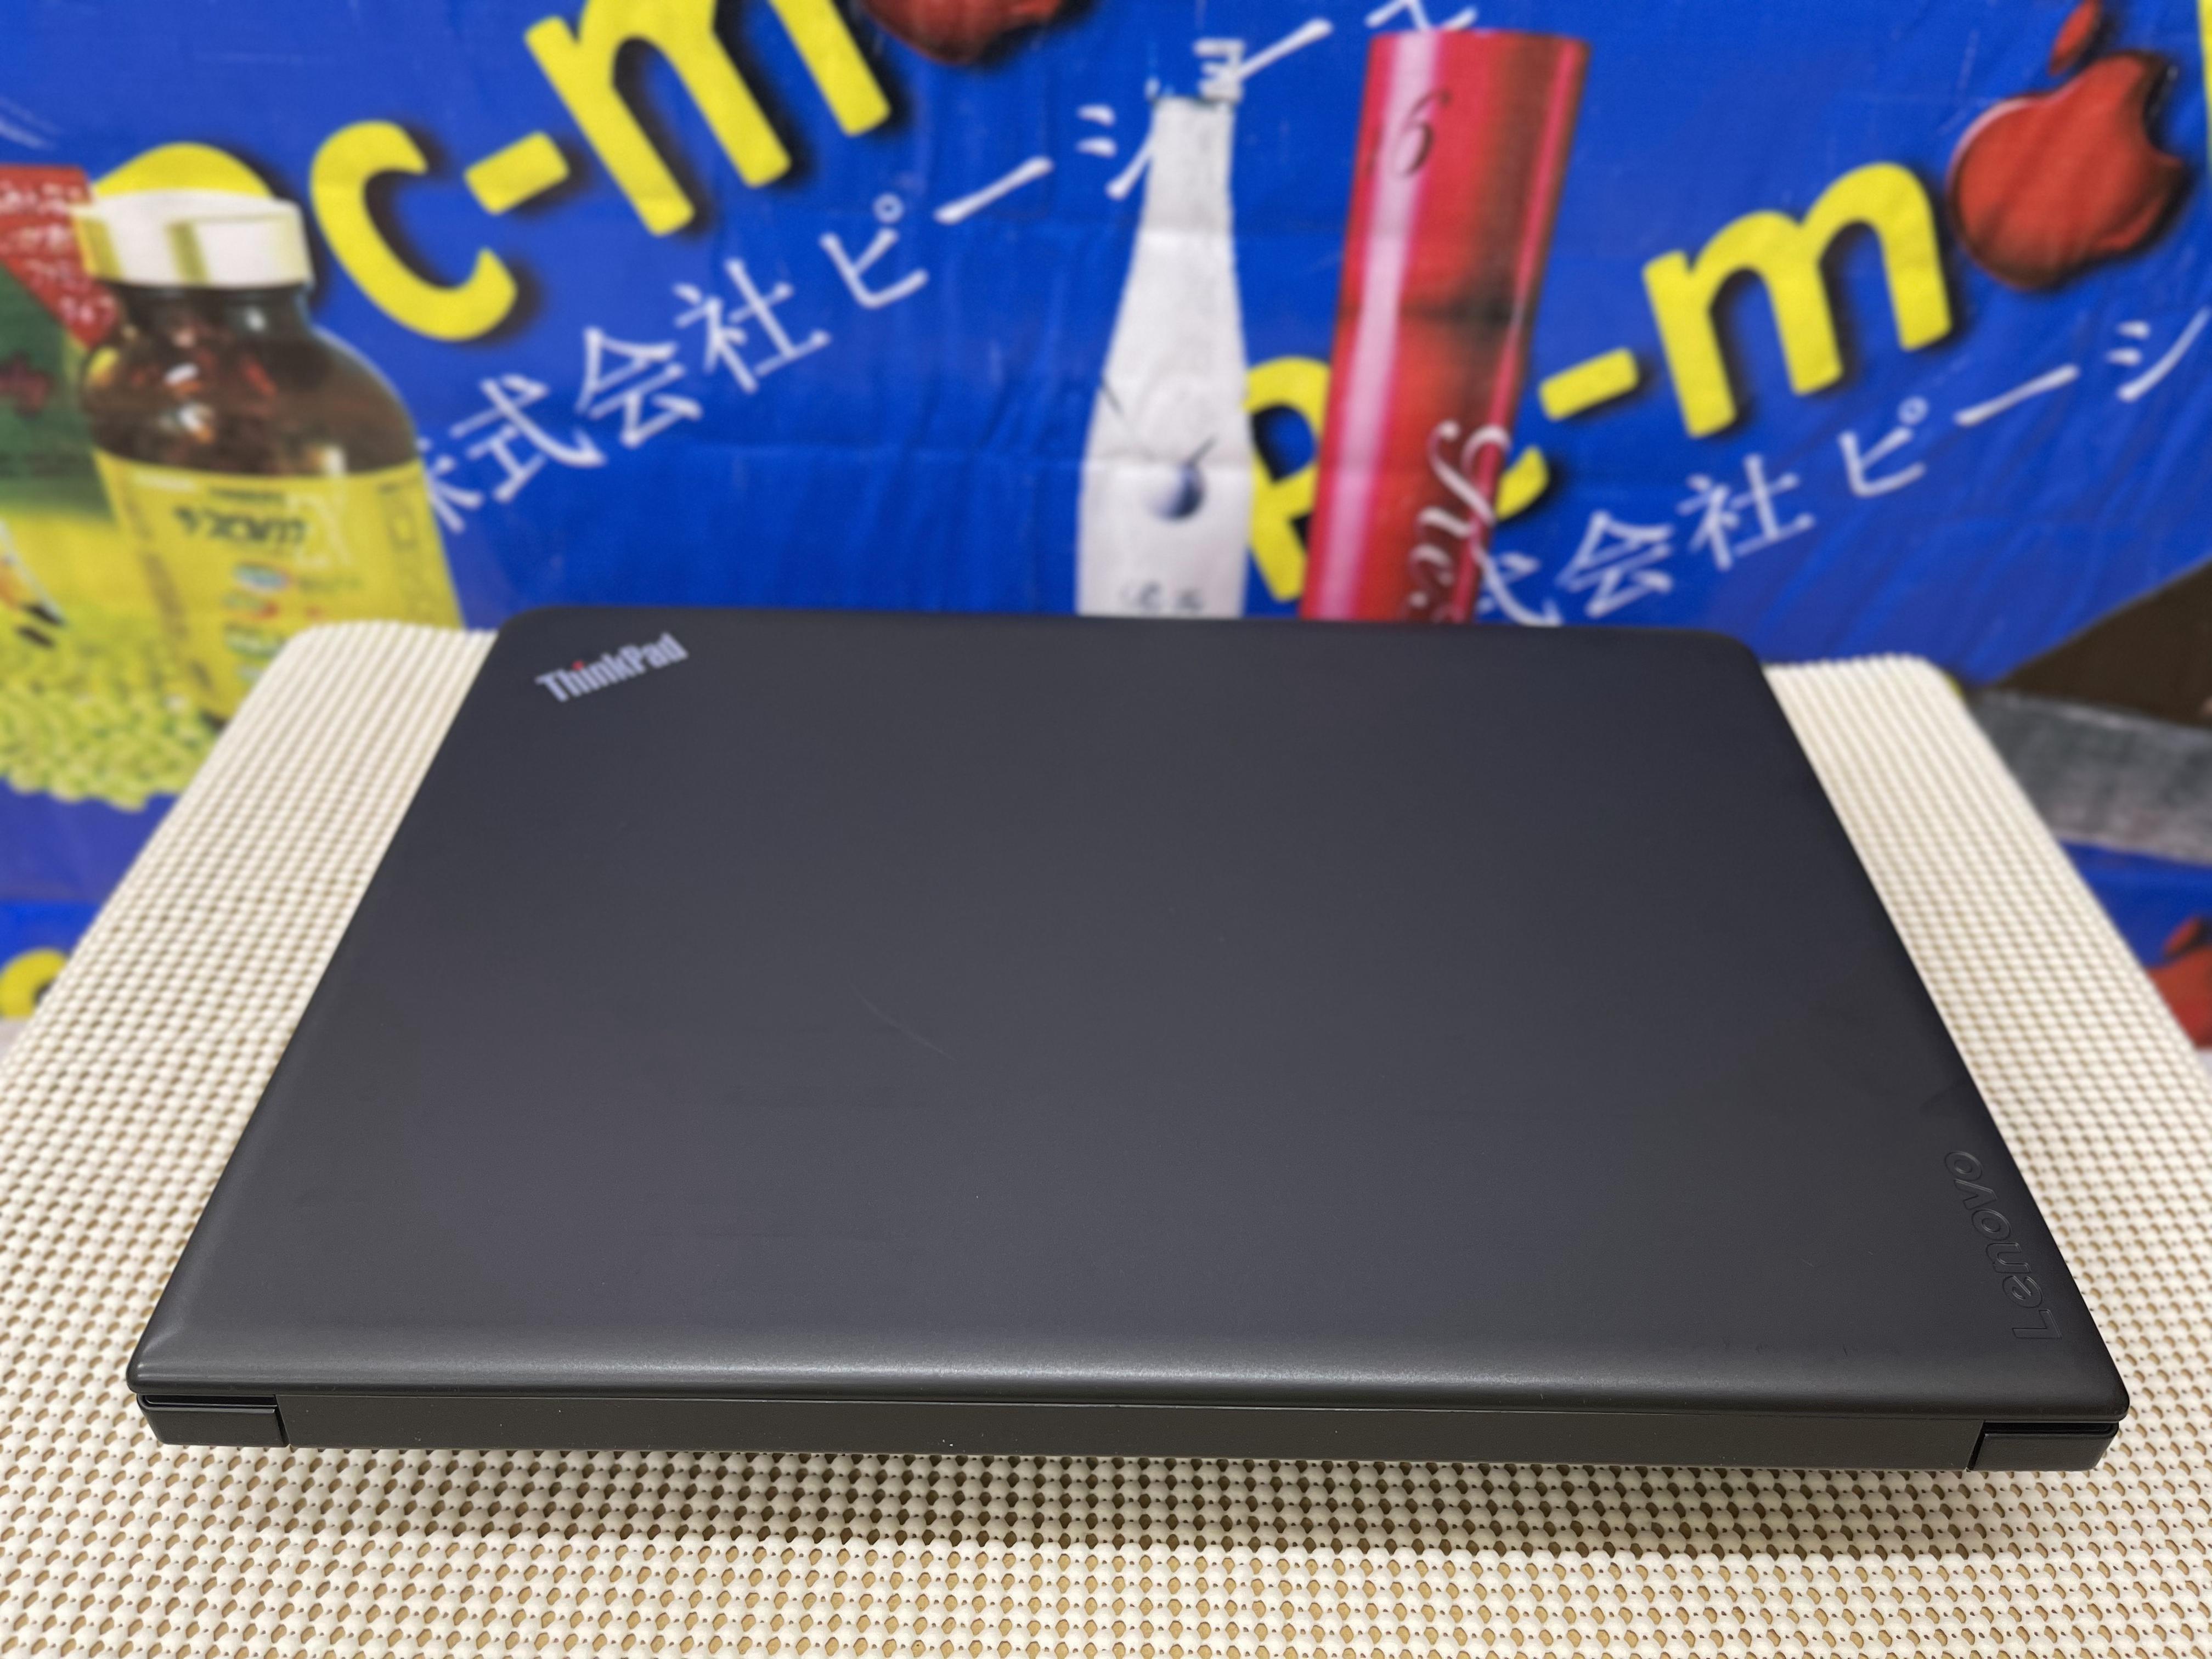 LENOVO ThinkPad E470 mode 2017 Gen7  /14 inch HD+ /  Core i7 / 7500U / 2.70-2.90Ghz  / Ram 8G / SSD 256G / Win 10 tiếng việt .có Crad rời NVIDIA 2G. / MS: 20220722 01WW